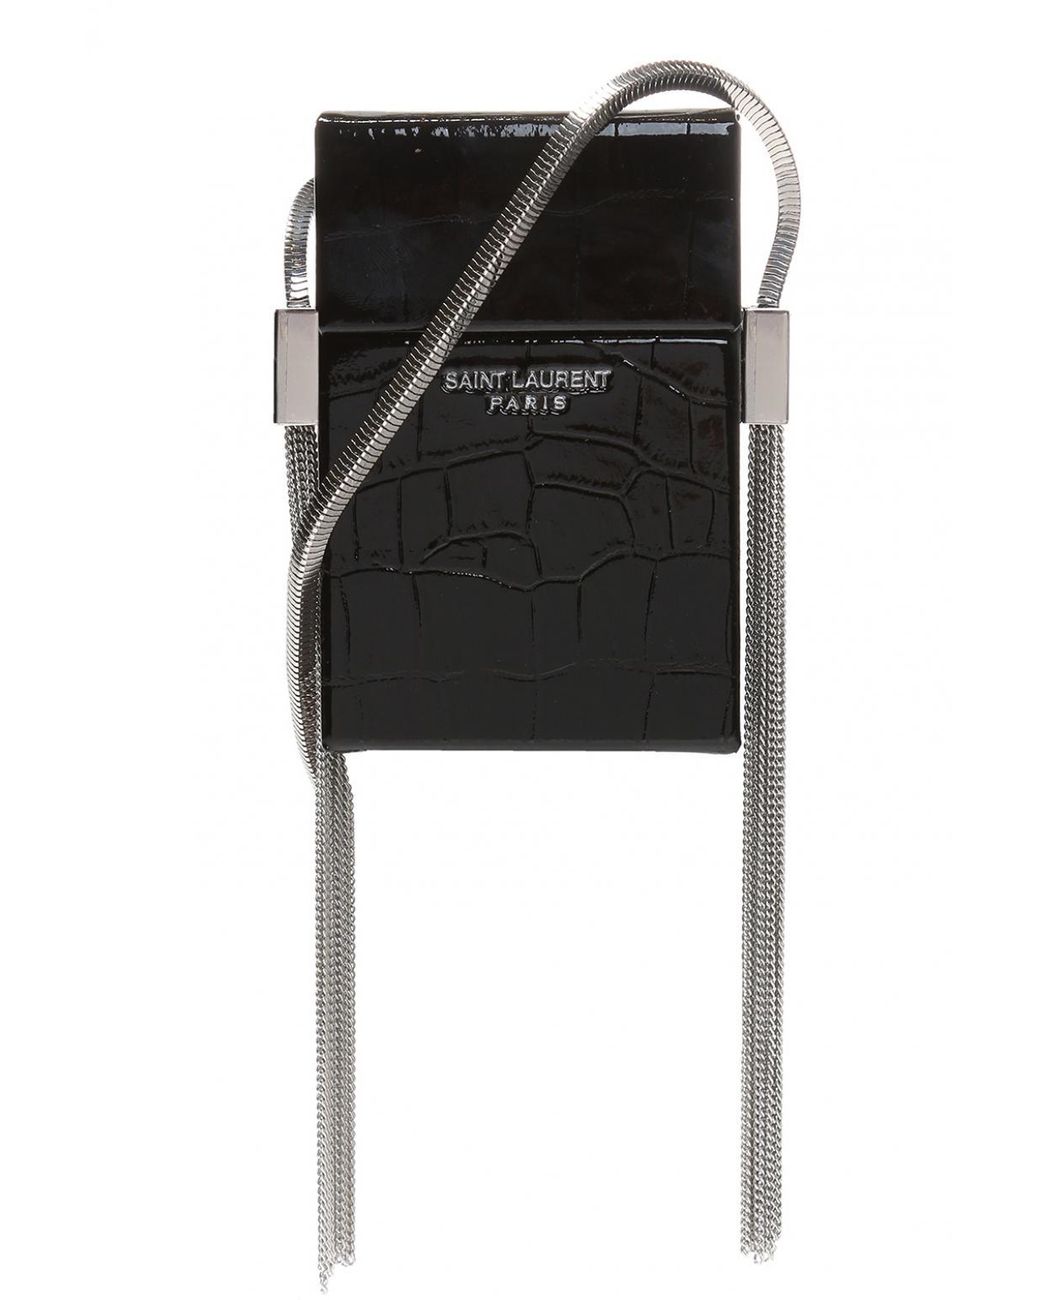 Yves Saint Laurent Cigarette Case - For Sale on 1stDibs | ysl cigarette case,  yves saint laurent cigarettes, ysl cigarette holder